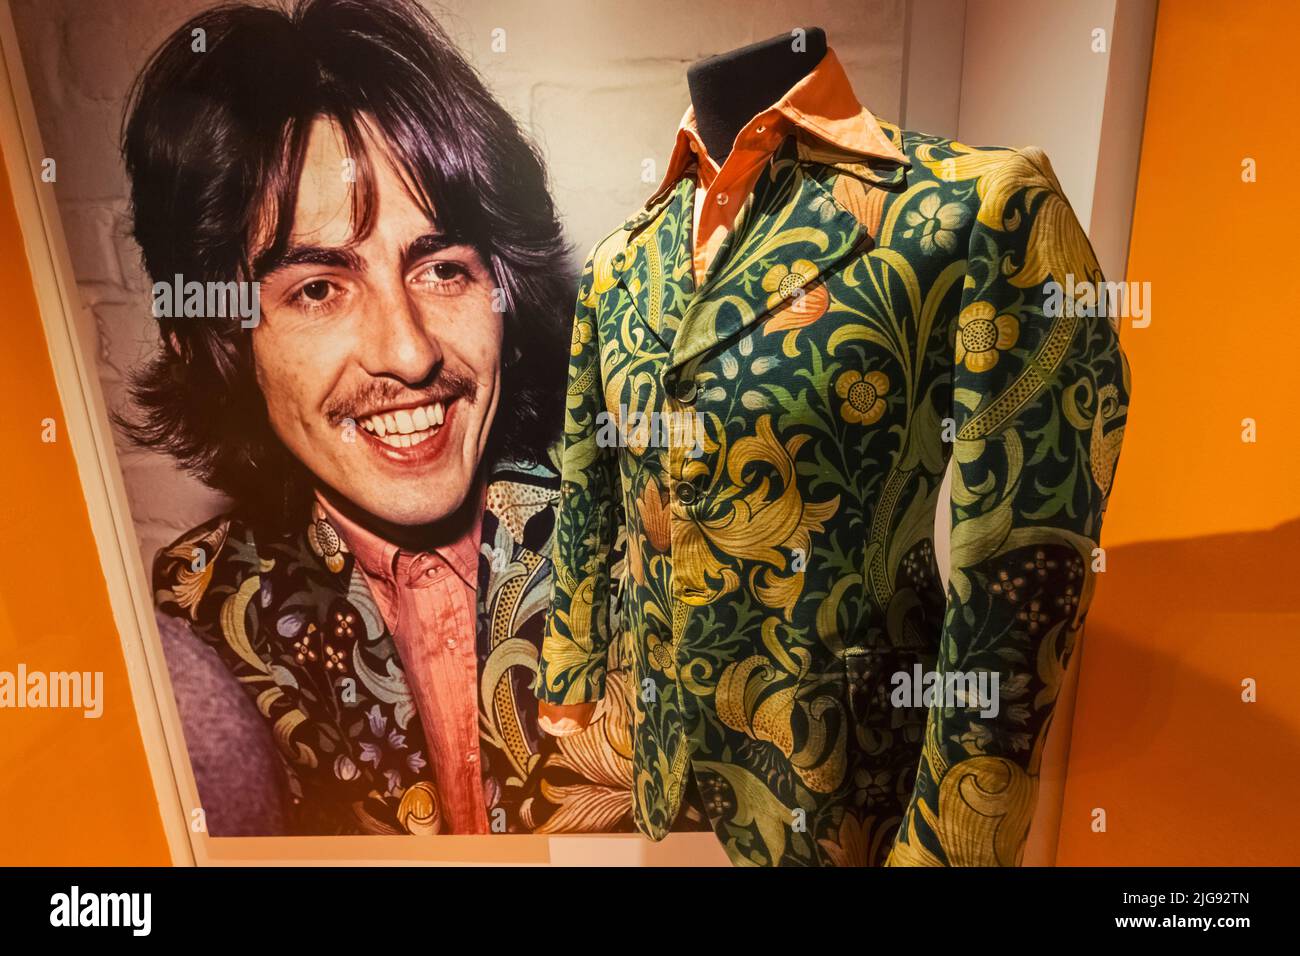 Inghilterra, Londra, Southwark, Bermondsey, il Museo della Moda e del tessuto, mostra della giacca degli anni '60 indossata da George Harrison dei Beatles Foto Stock